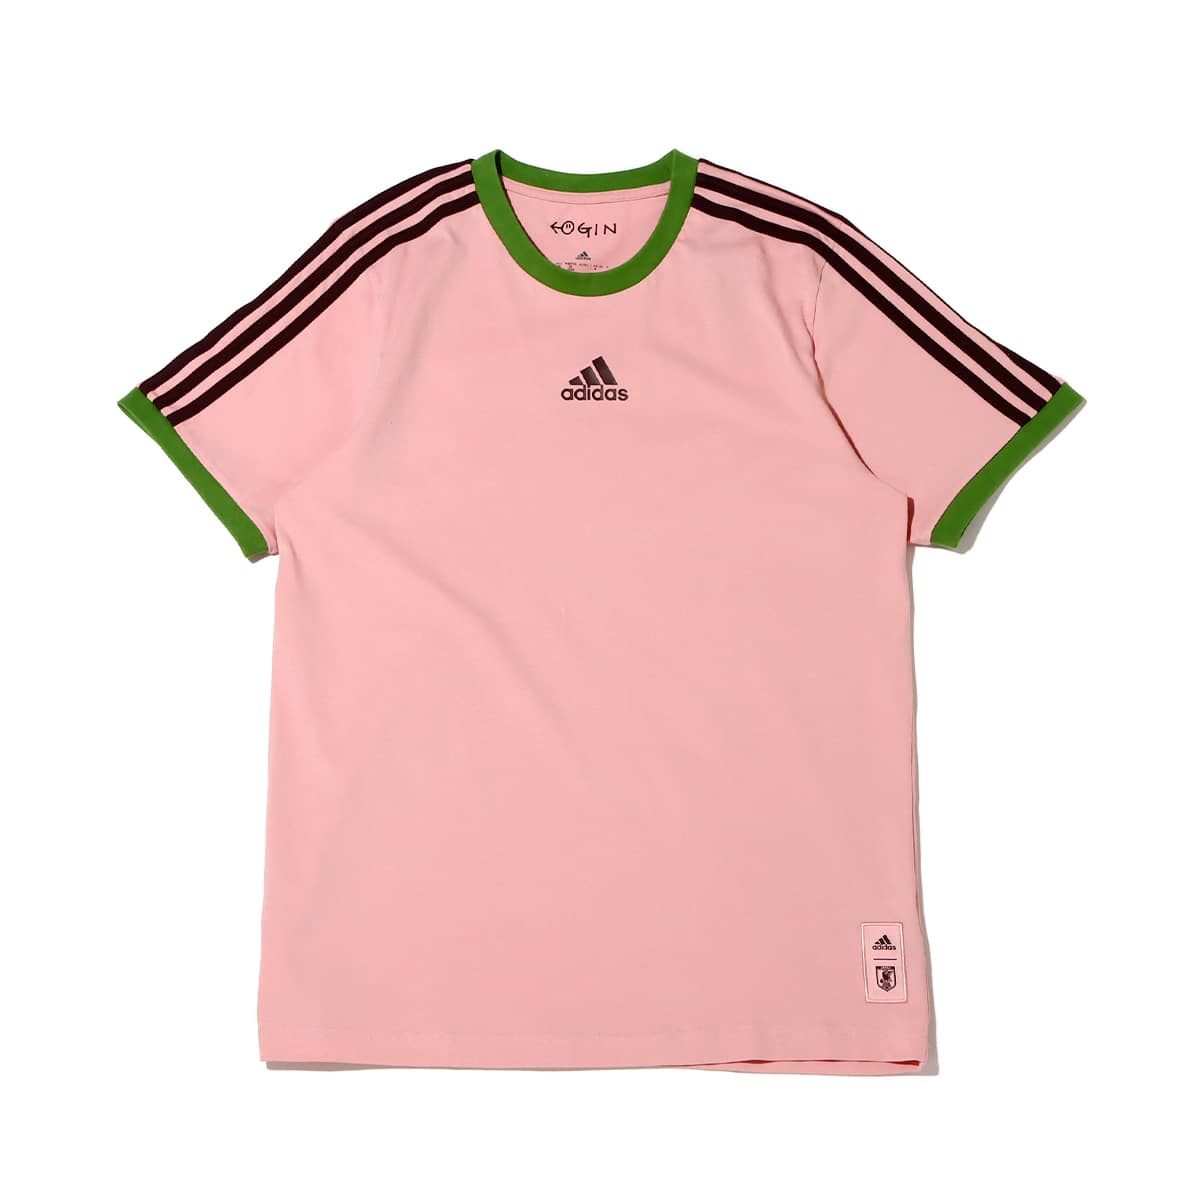 adidas サッカー日本代表 スペシャルパック Tシャツ WONDER MAUVE 22FW-S